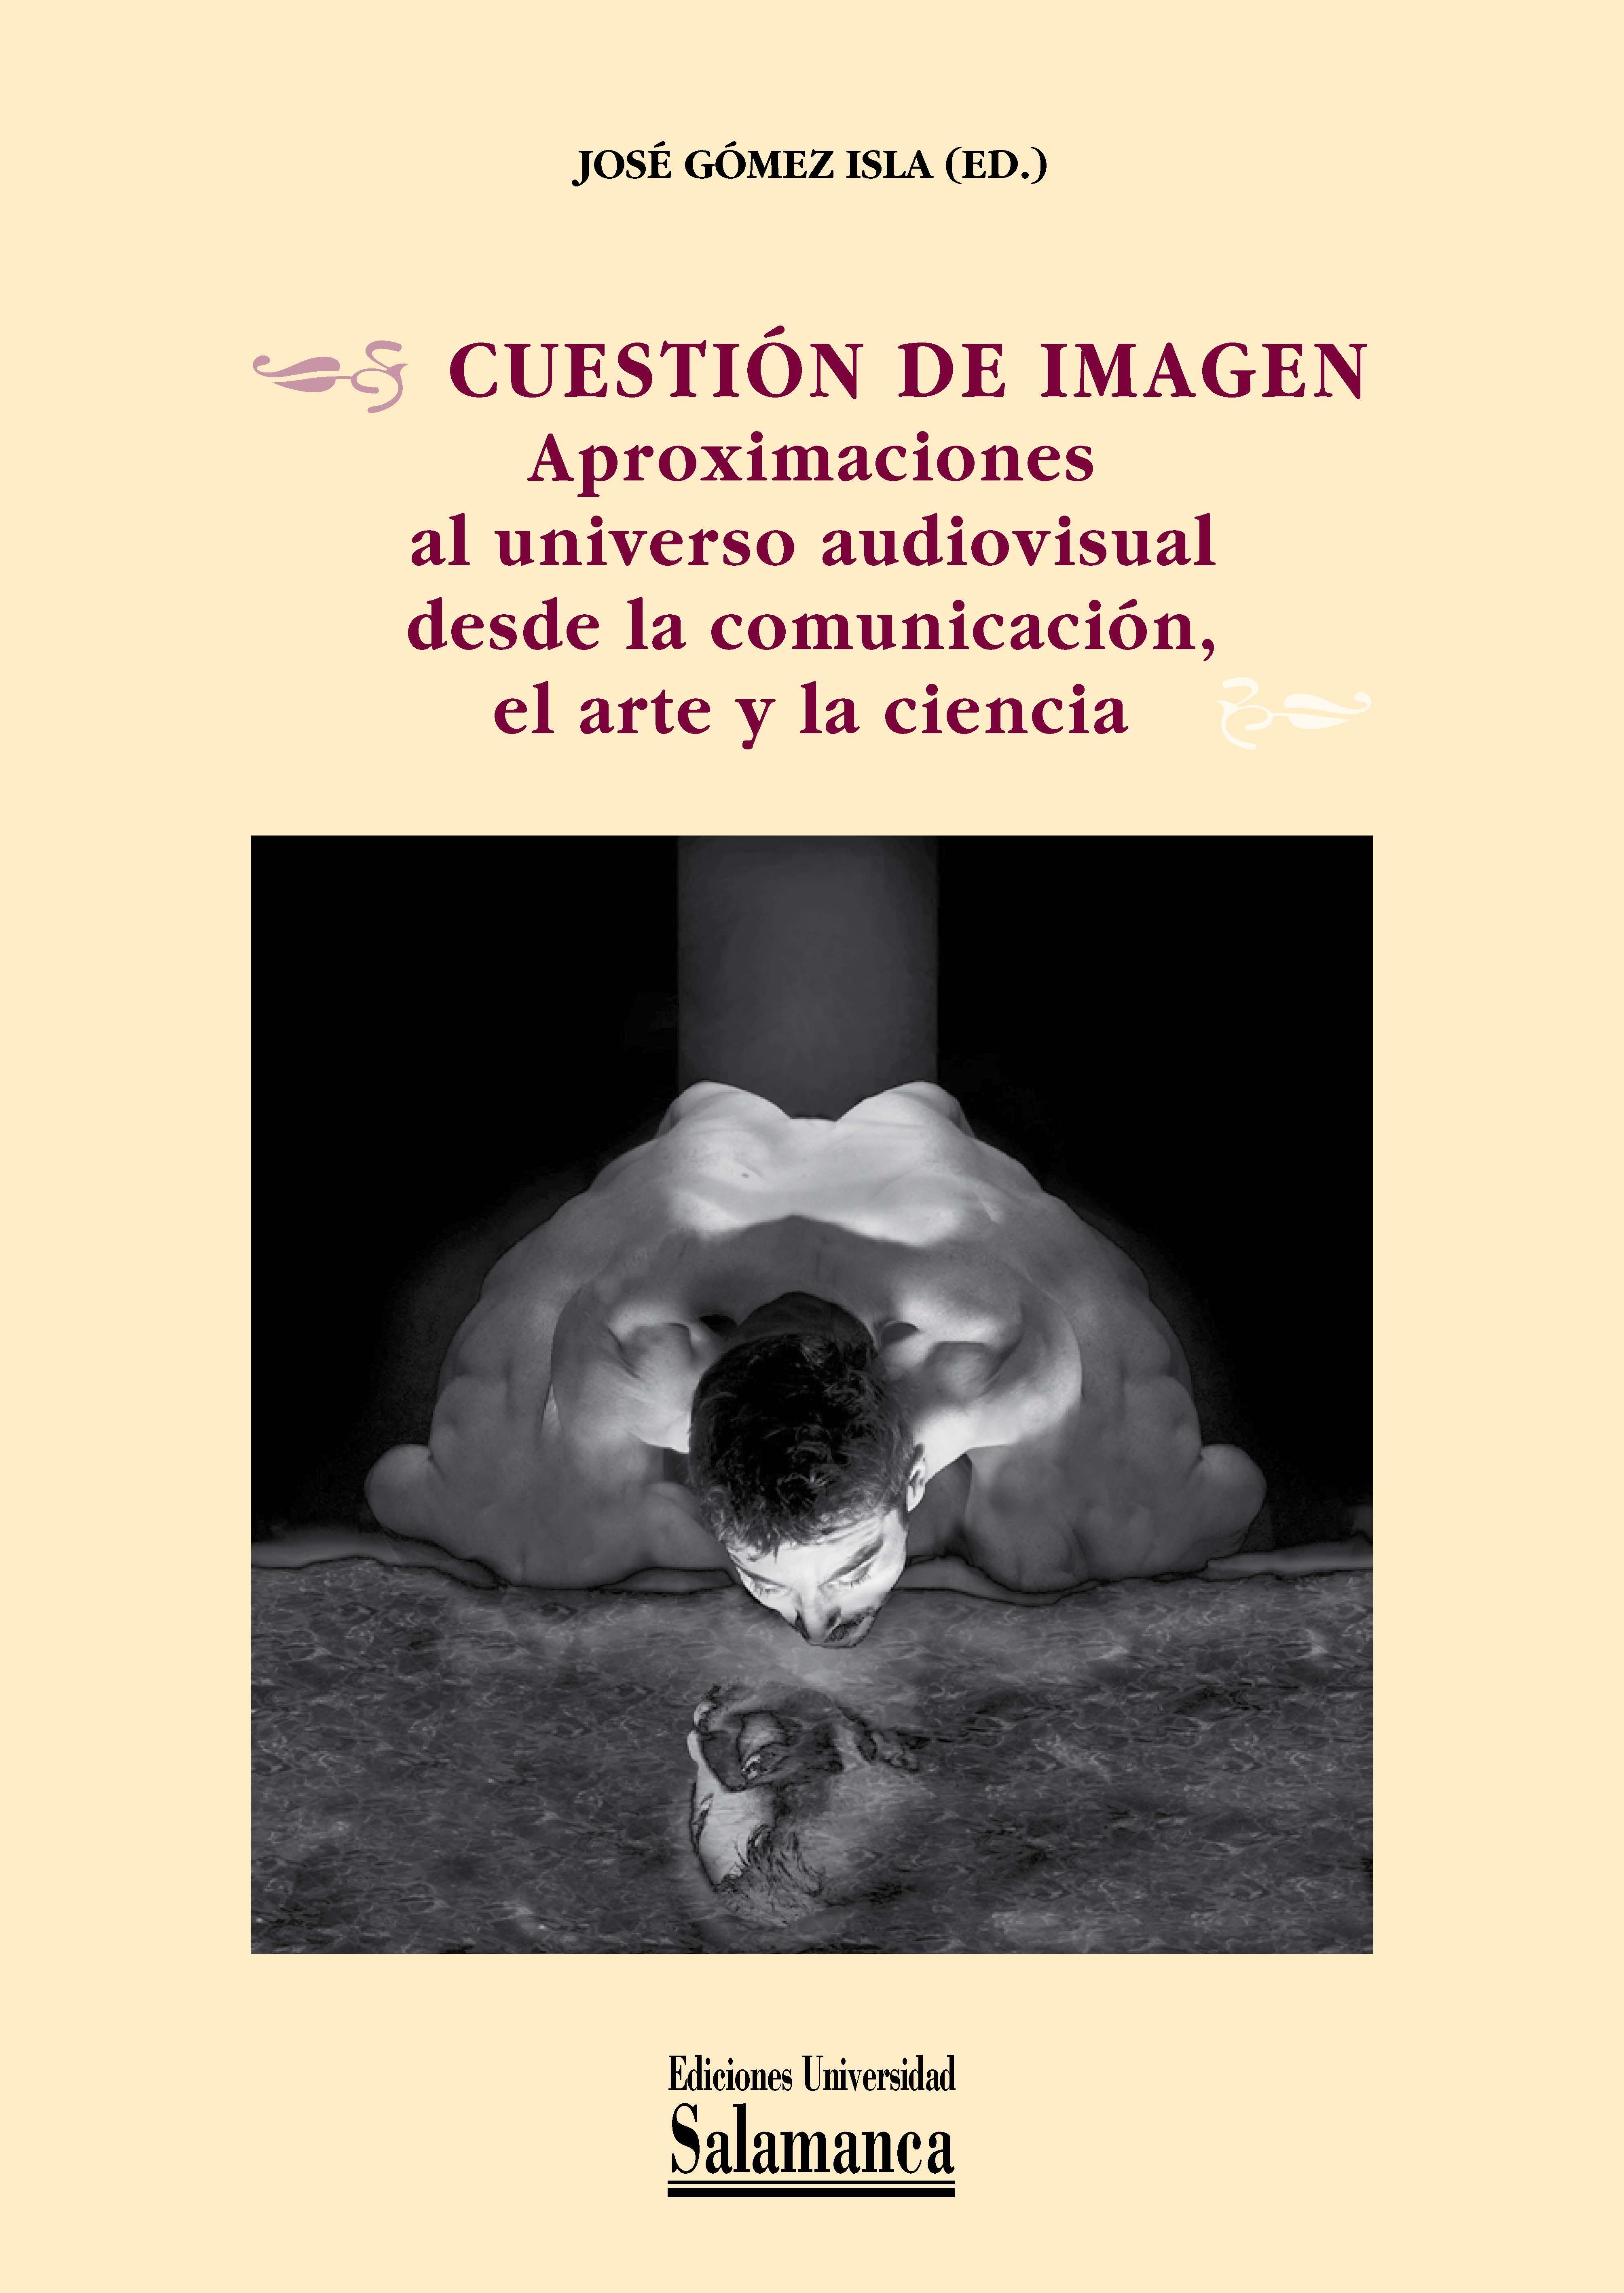 CUESTION DE IMAGEN: APROXIMACIONES AL UNIVERSO AUDIOVISUAL DESDE LA COMUNICACION, EL ARTE Y LA CIENCIA